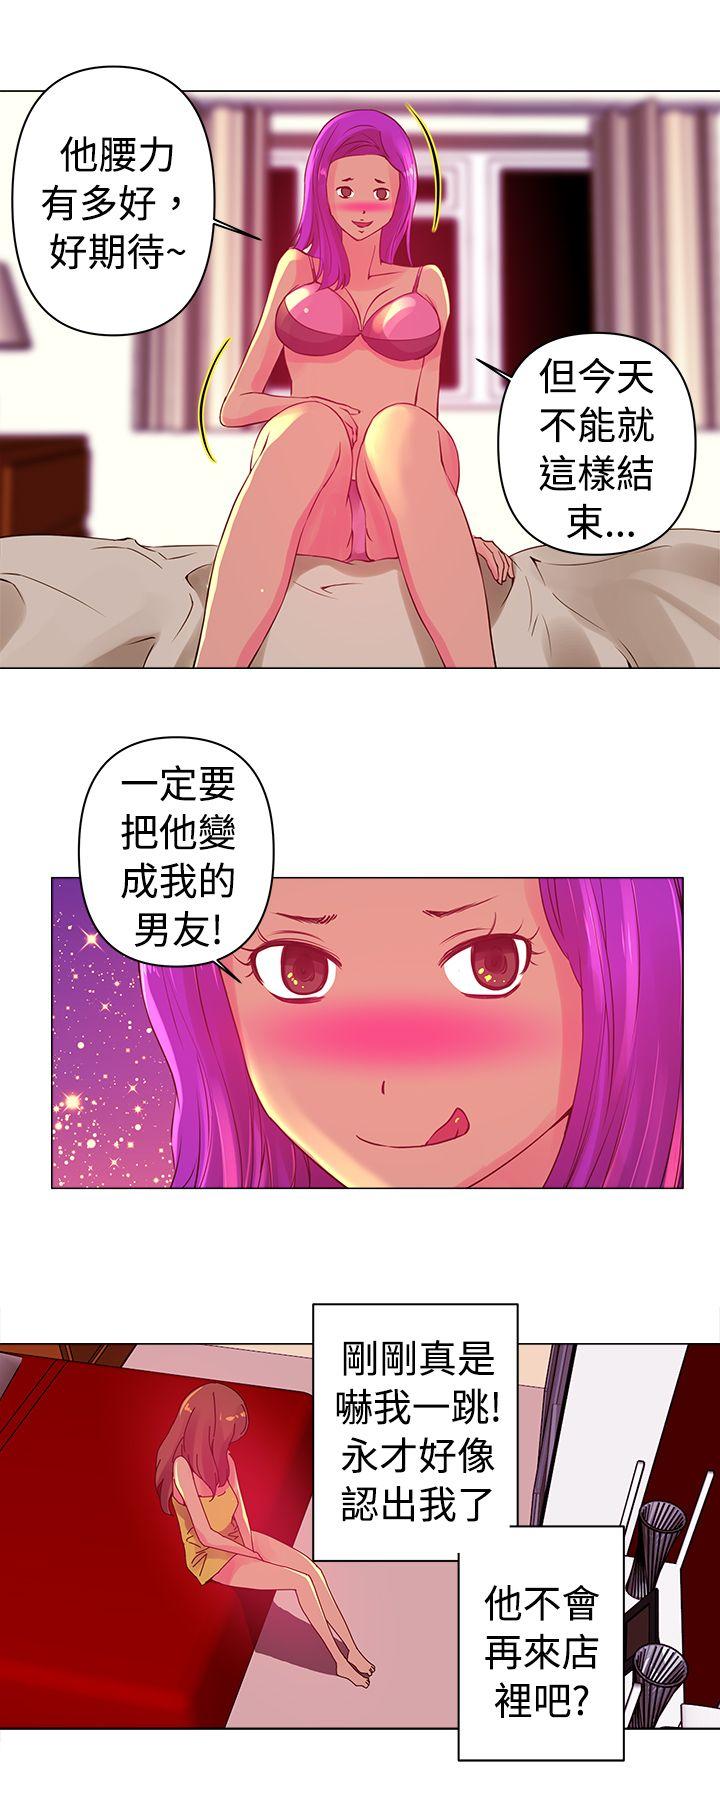 韩国污漫画 Commission 第3话 12